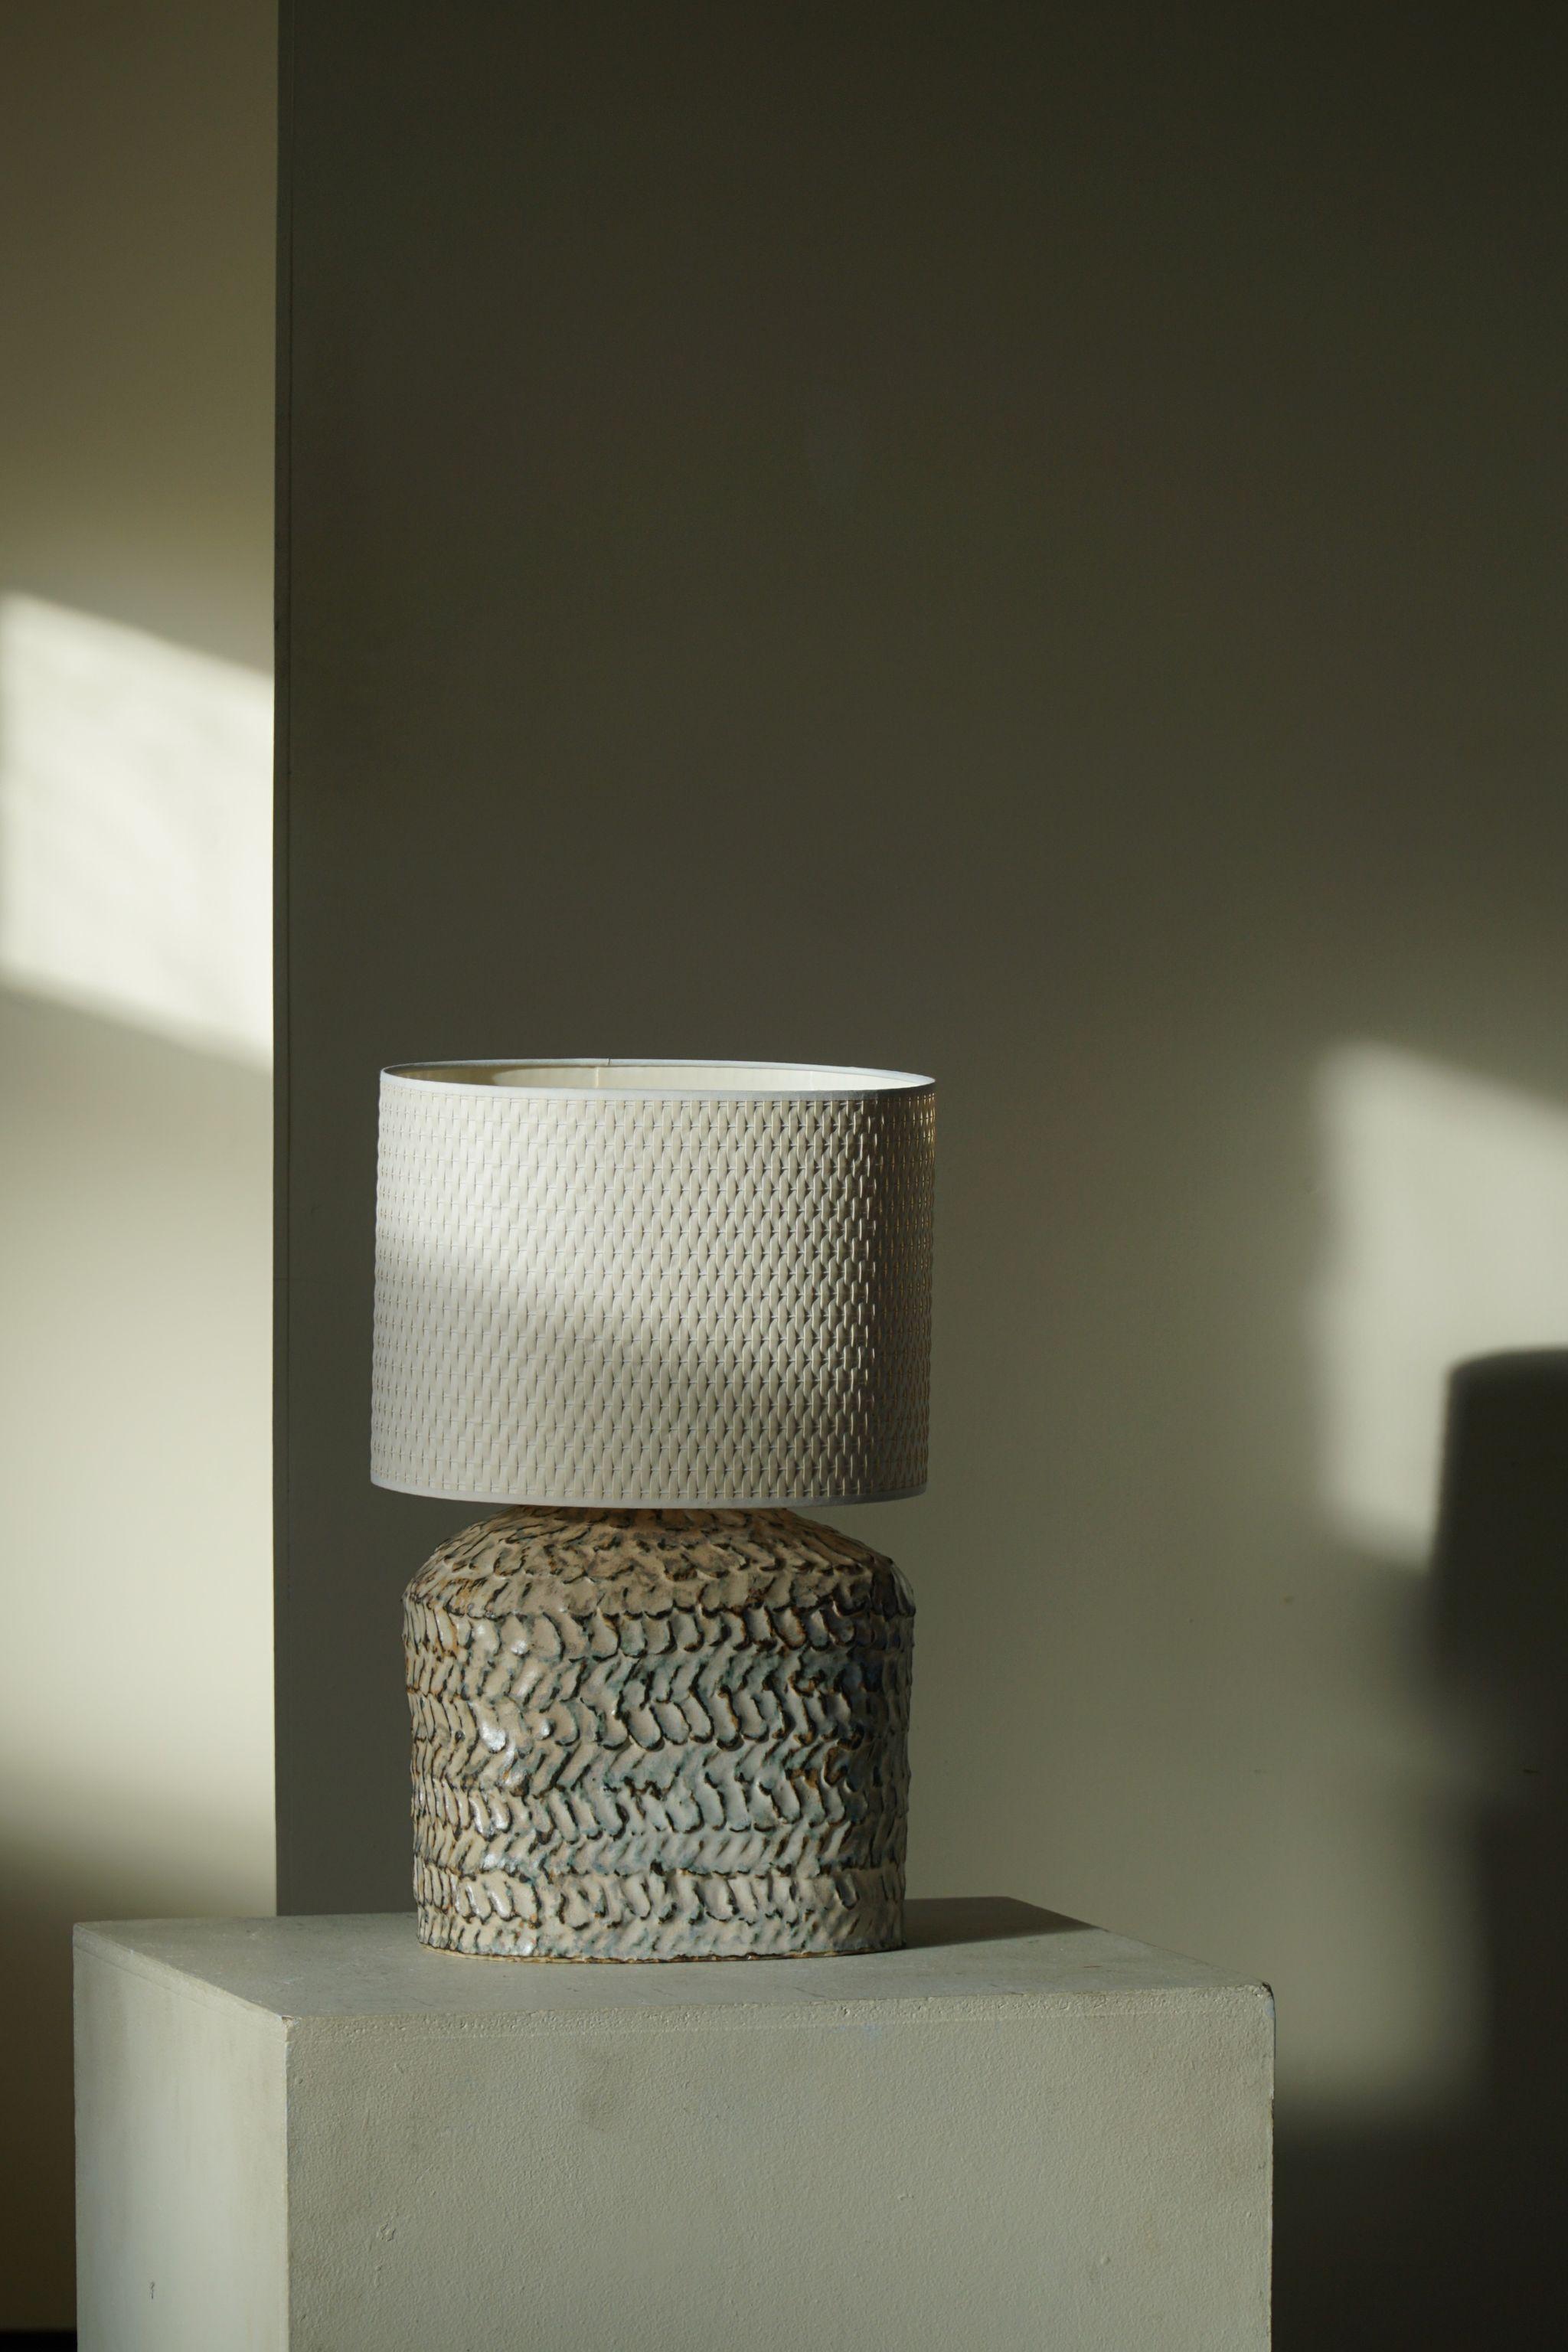 Lampe de table en céramique avec glaçure dans différentes couleurs blanches, beiges et brunes, réalisée par l'artiste danois Ole Victor, 2021.

Ole Victor est un artiste danois qui a fréquenté l'Académie des arts entre 1975 et 1980. Depuis, il